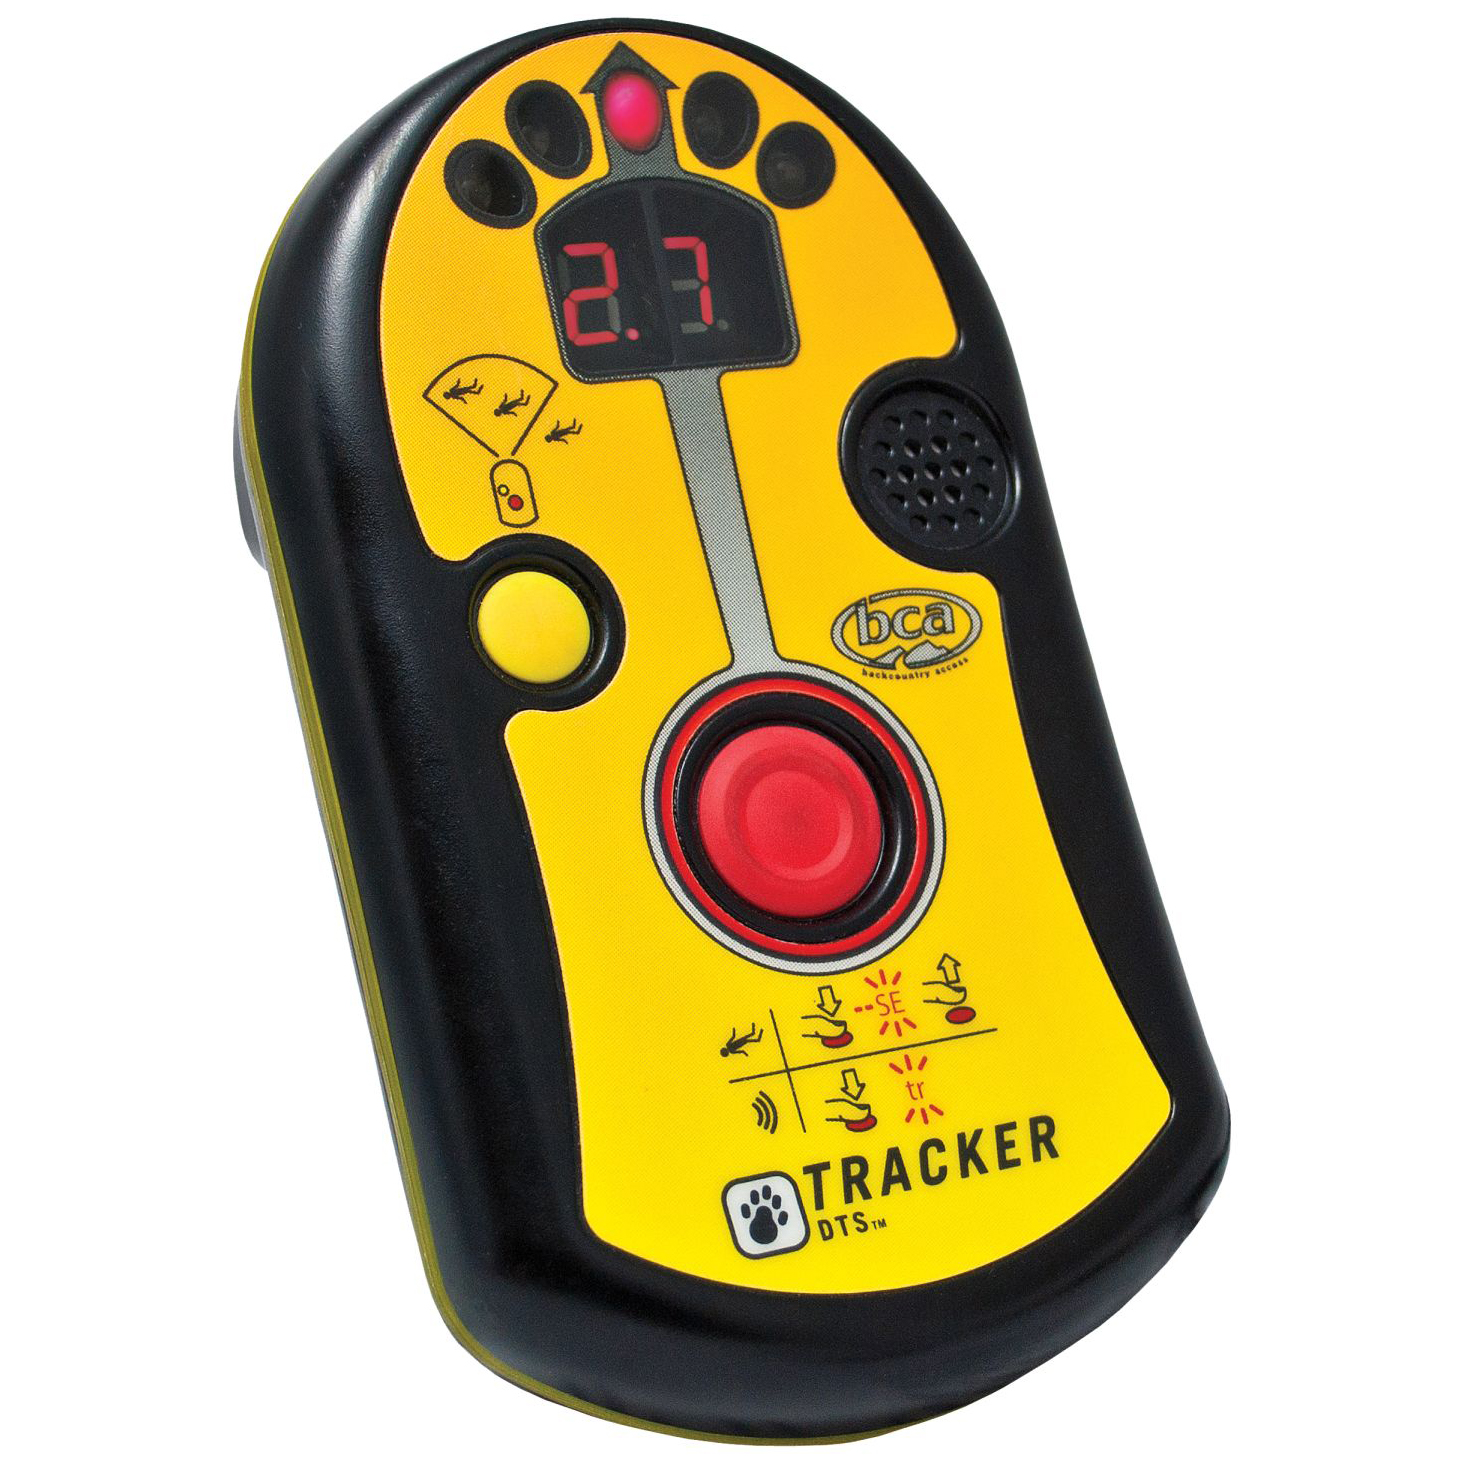 bca-tracker-dts-avalanche-beacon-avalanche-equipment